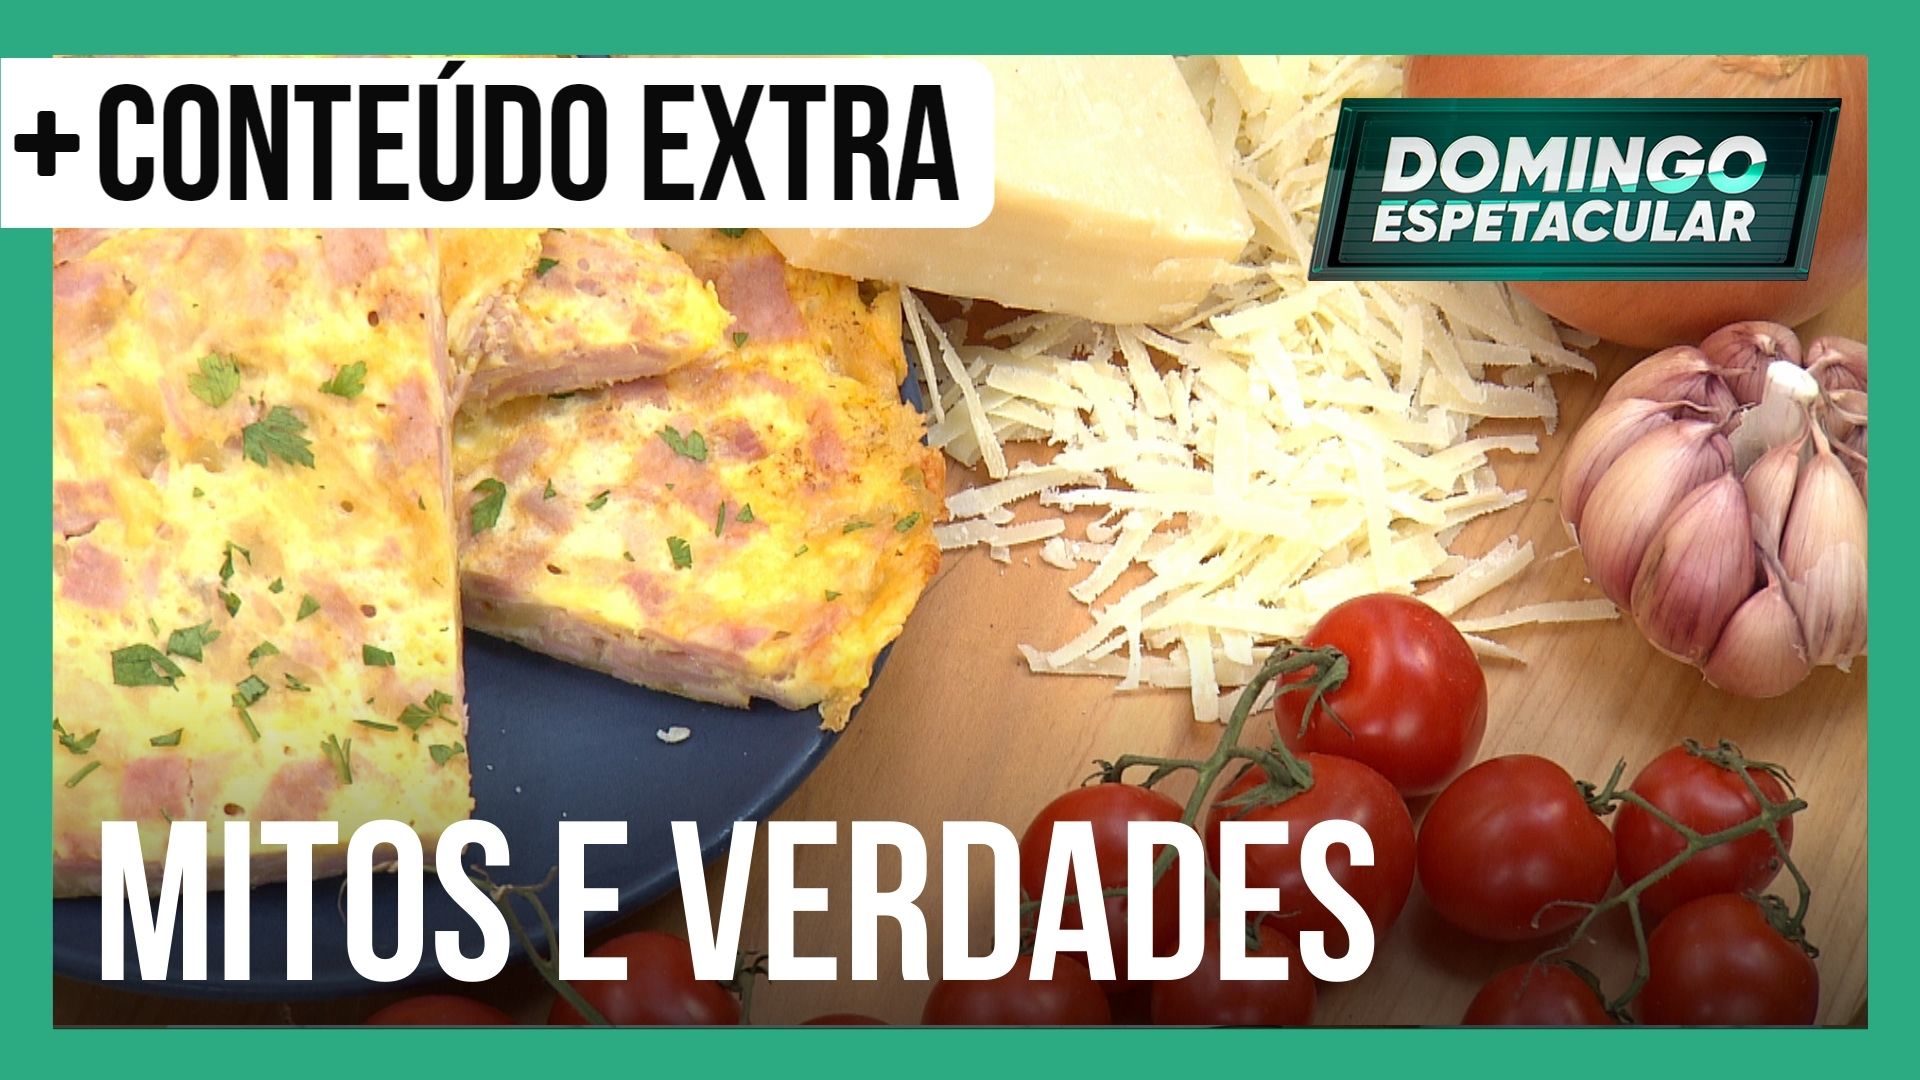 Vídeo: Afinal, omelete é calórico ou não? Especialista responde! | Mitos e Verdades Express